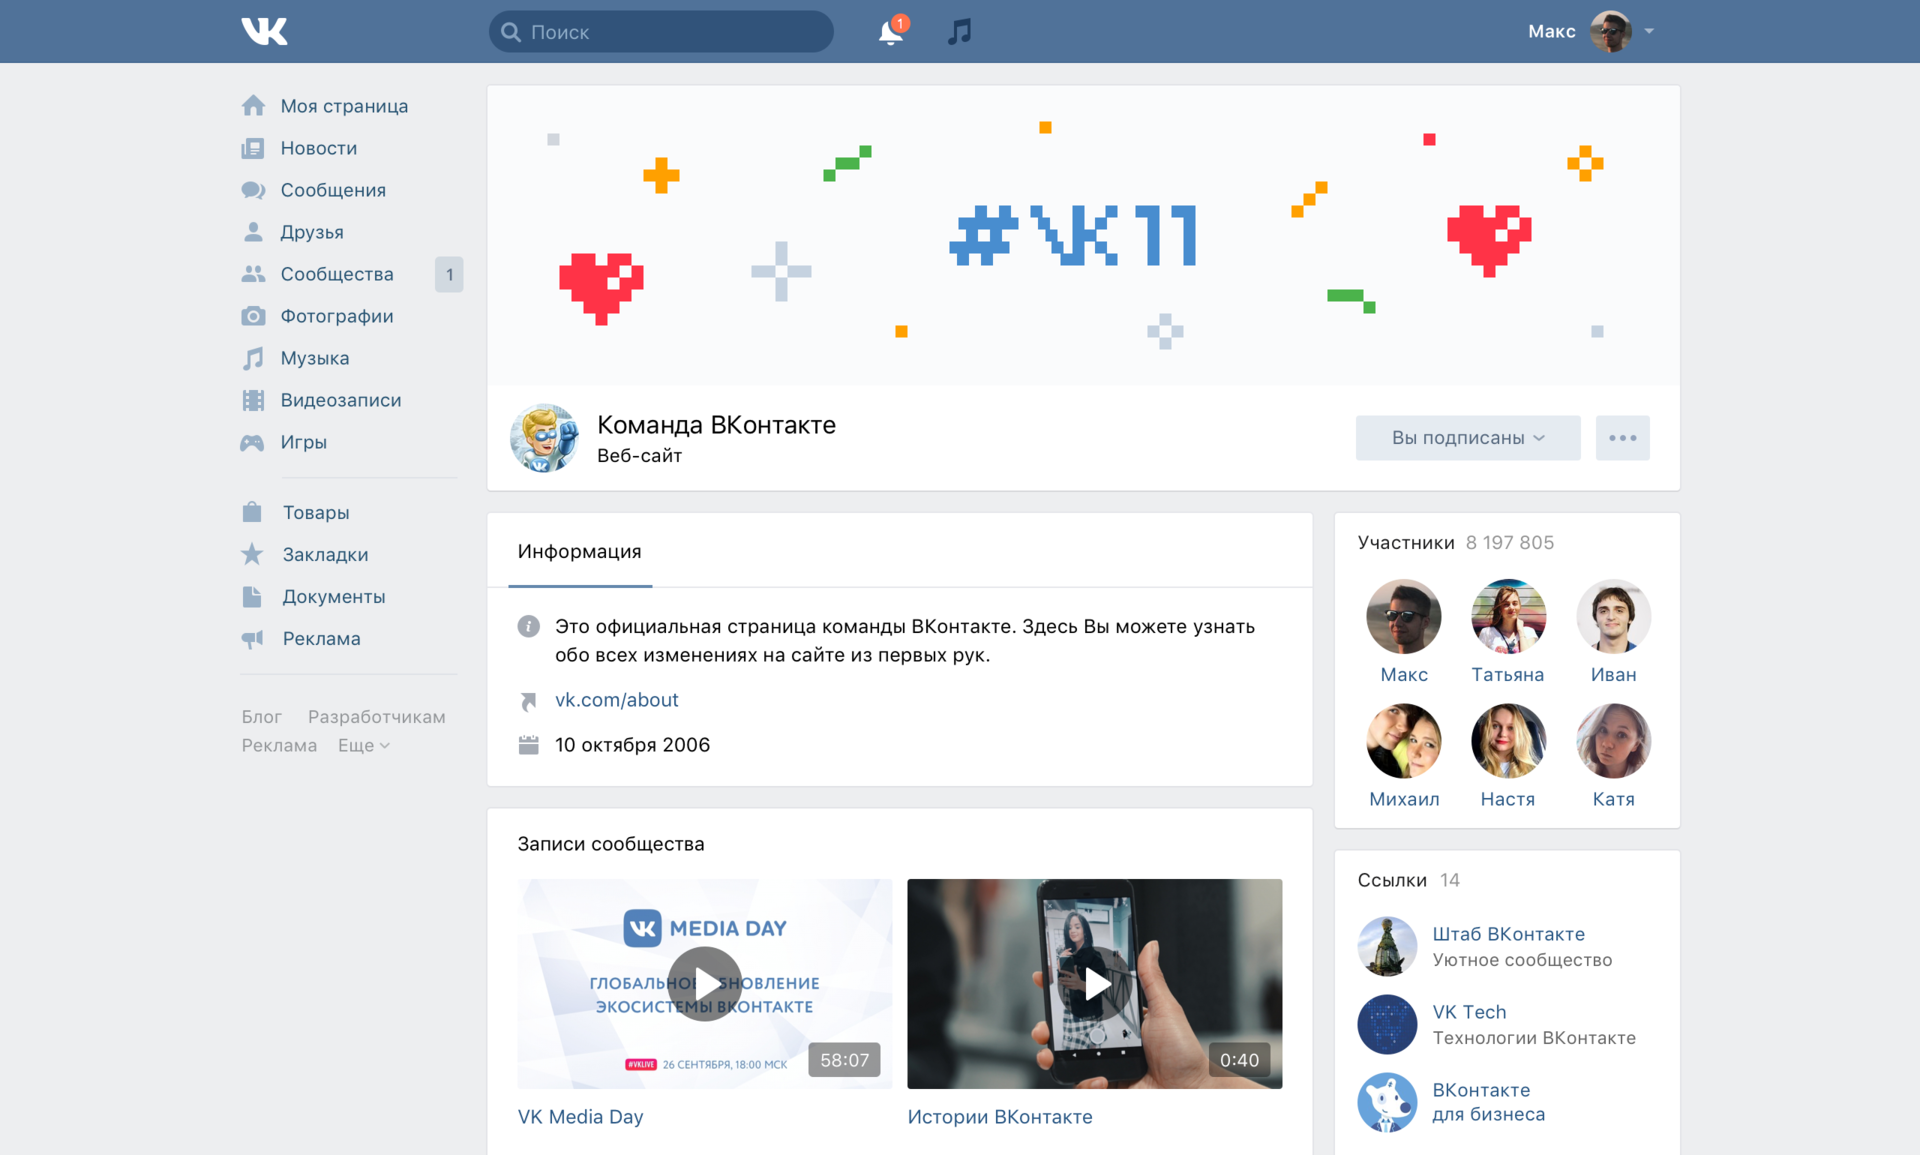 Пользователи "ВКонтакте" станут авторами интерактивной картины